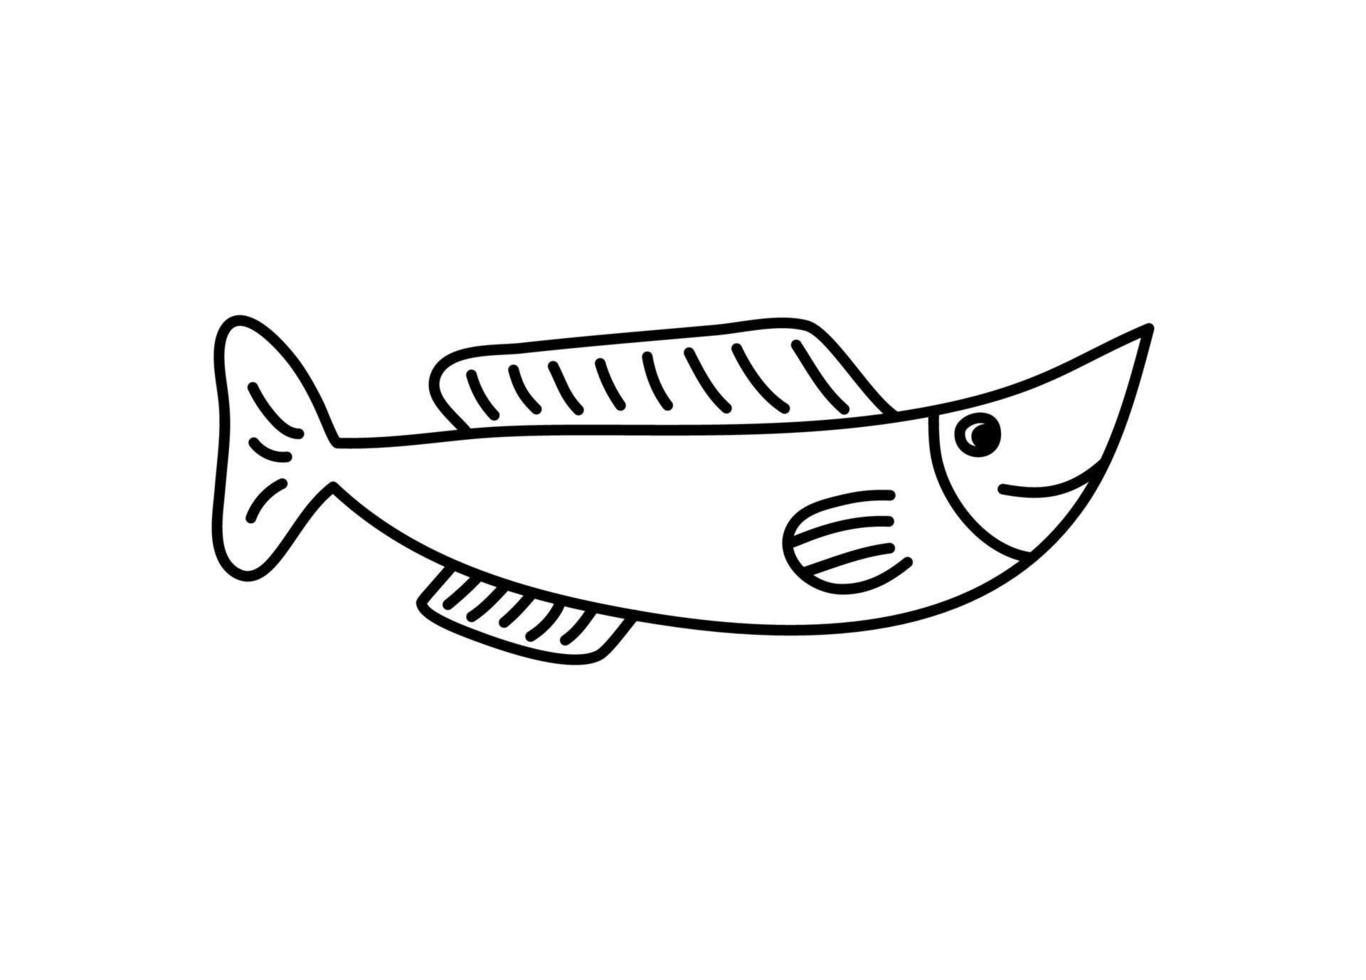 Vektor handgezeichneter Doodle-Fisch im skandinavischen Monoline-Stil. bild für etikett, websymbol, postkartendekoration. fröhliches, kindisches, süßes Meeresthema